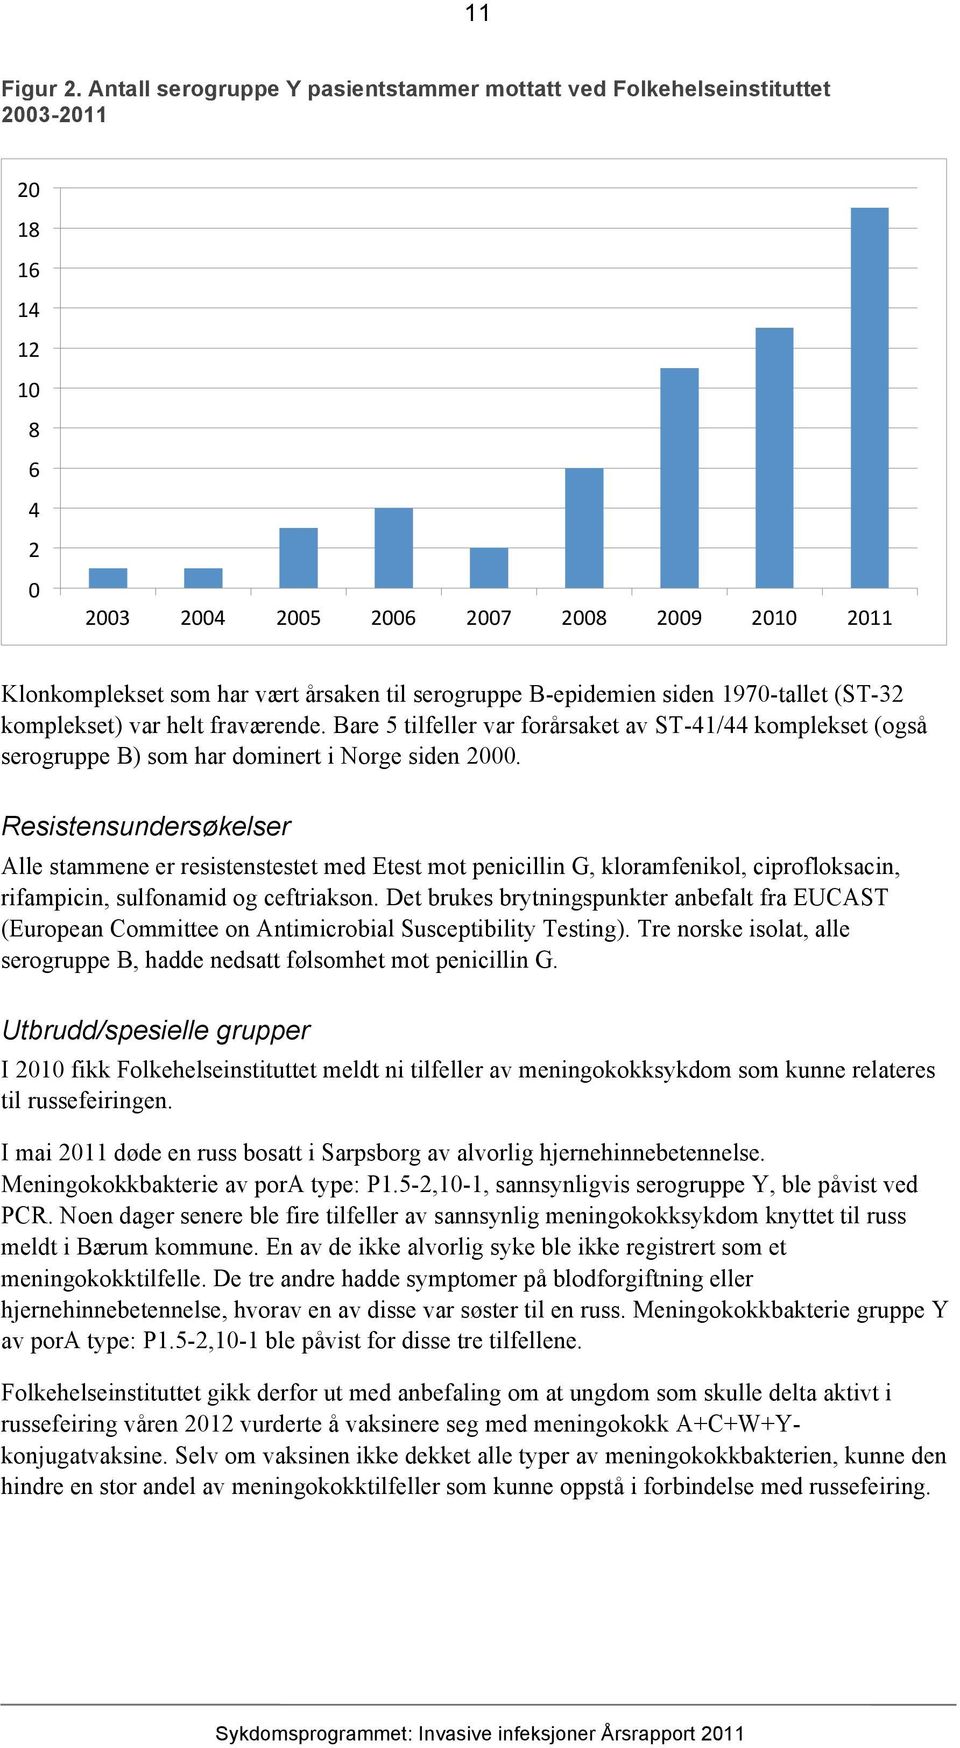 serogruppe B-epidemien siden 1970-tallet (ST-32 komplekset) var helt fraværende. Bare 5 tilfeller var forårsaket av ST-41/44 komplekset (også serogruppe B) som har dominert i Norge siden 2000.